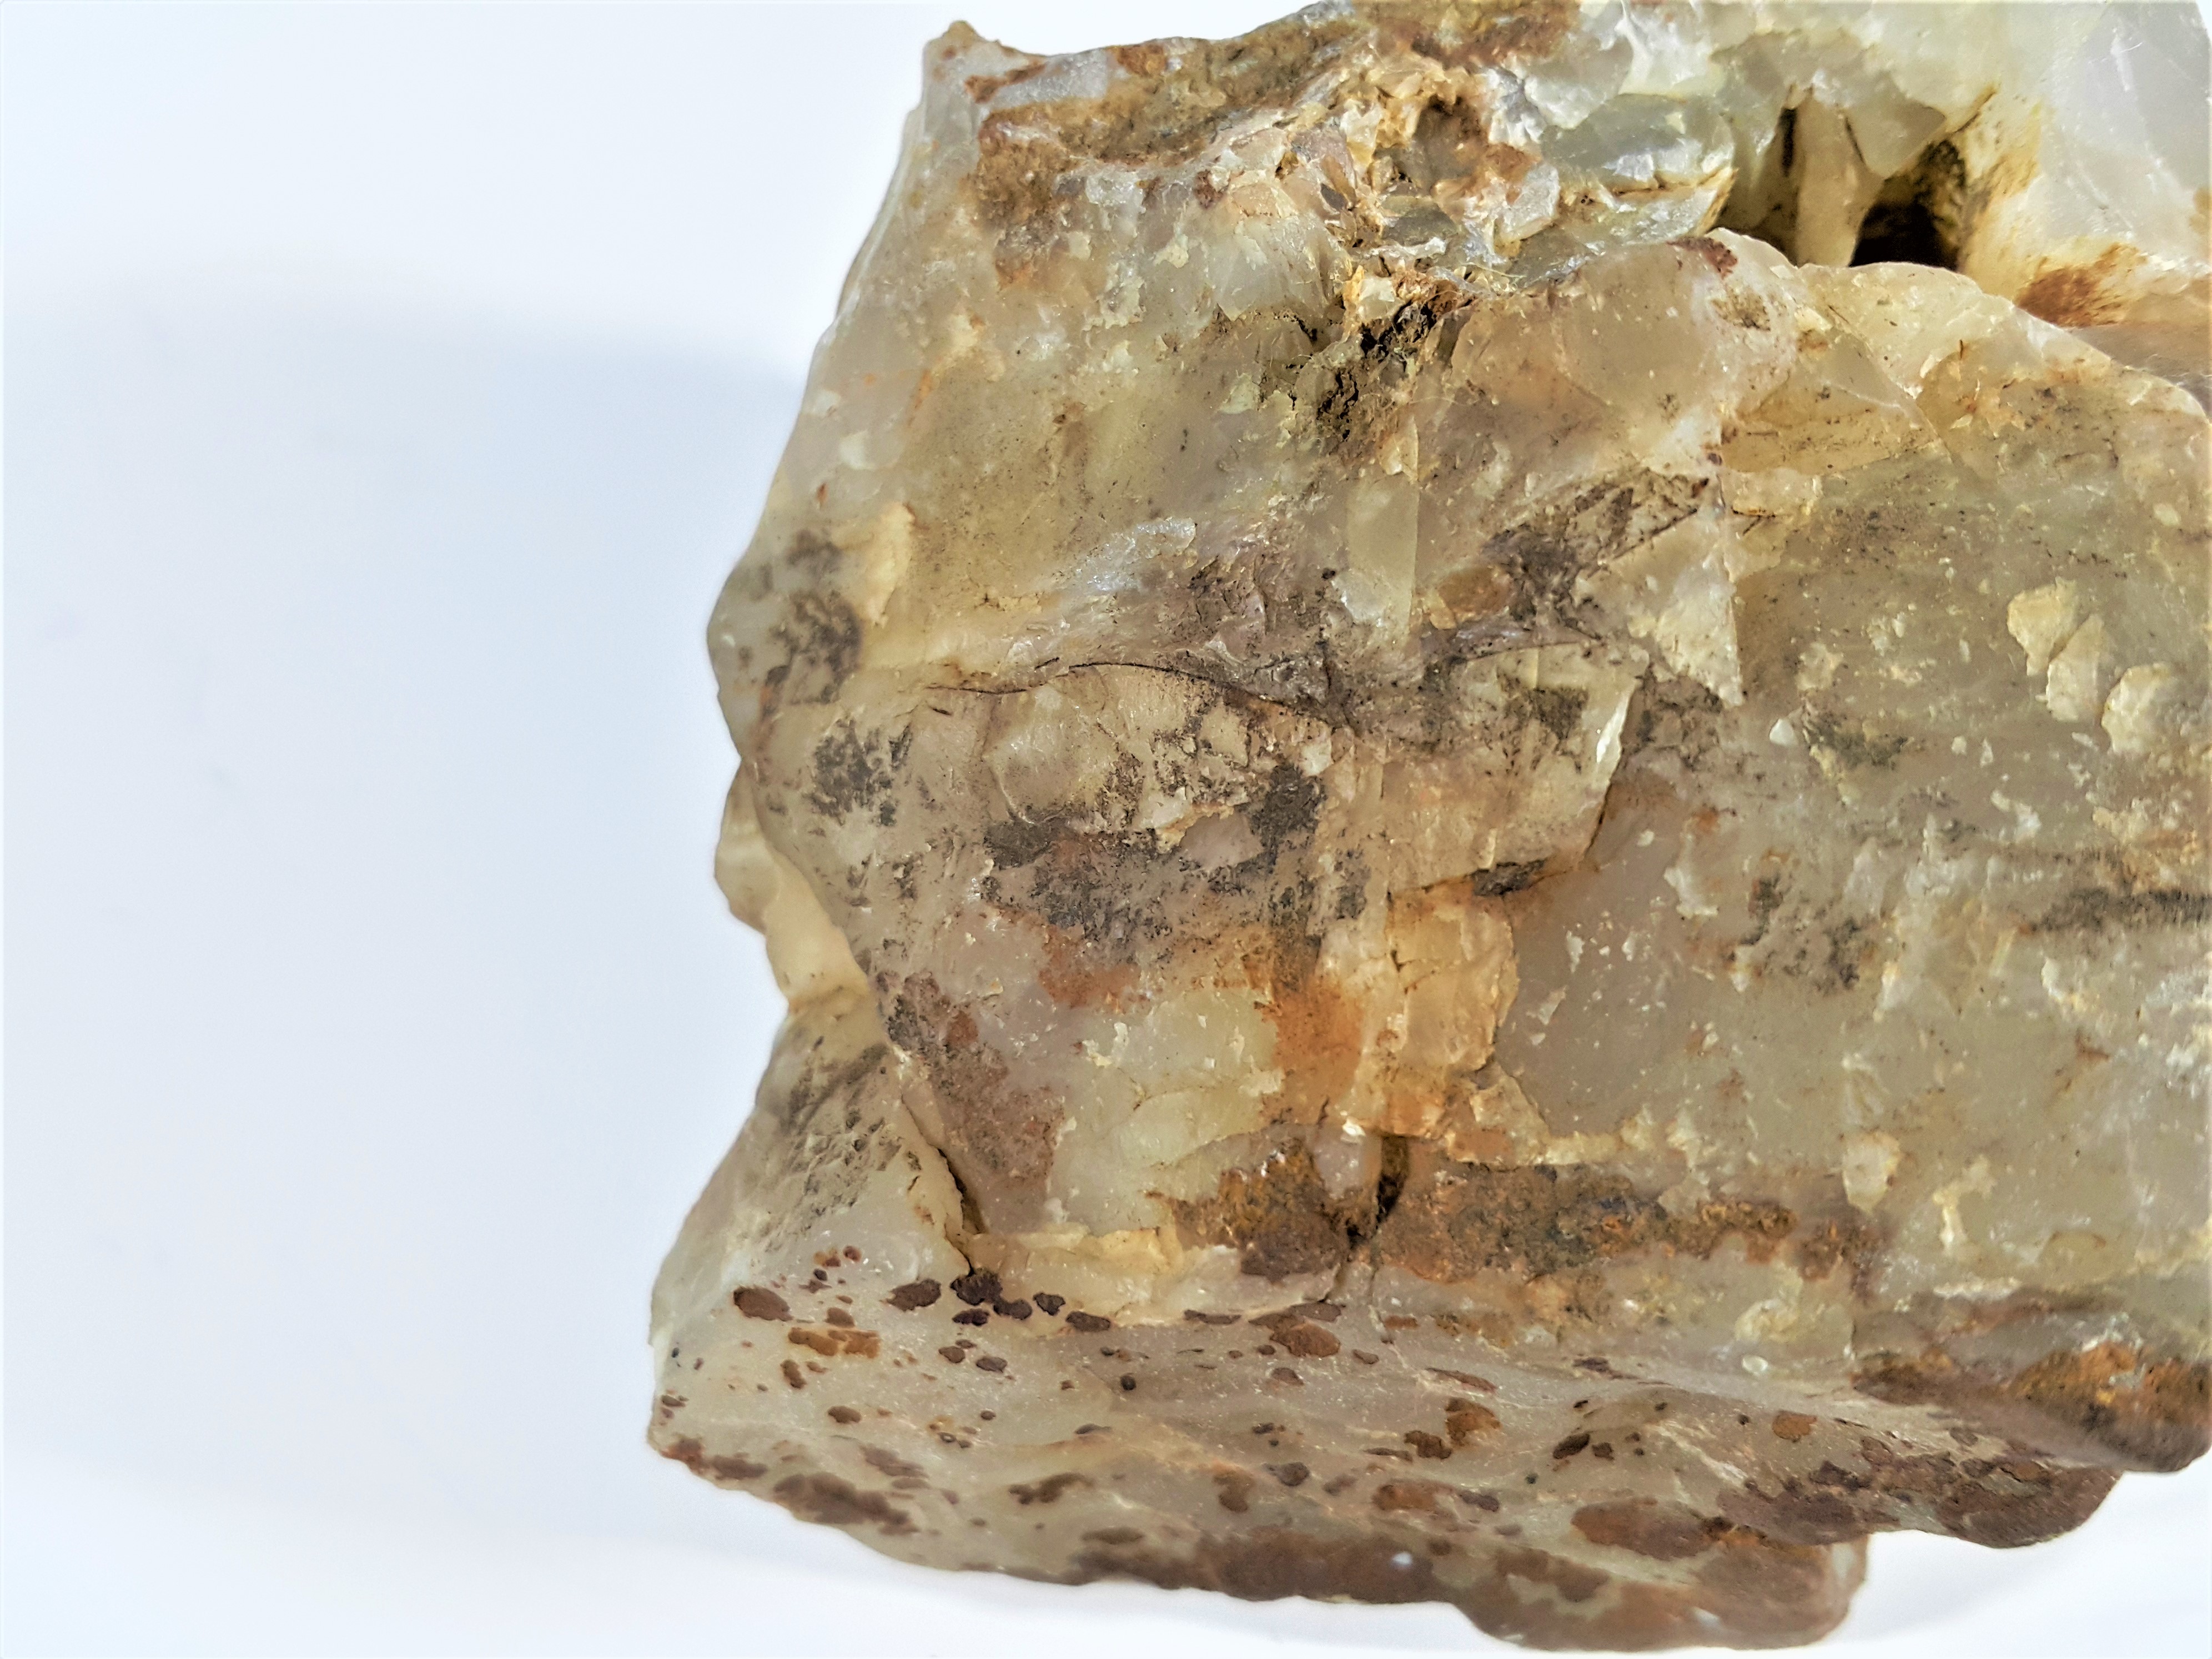 銀九藝] 早期北投石天然聚合狀結晶體能量石原礦淨重~383公克| Yahoo 